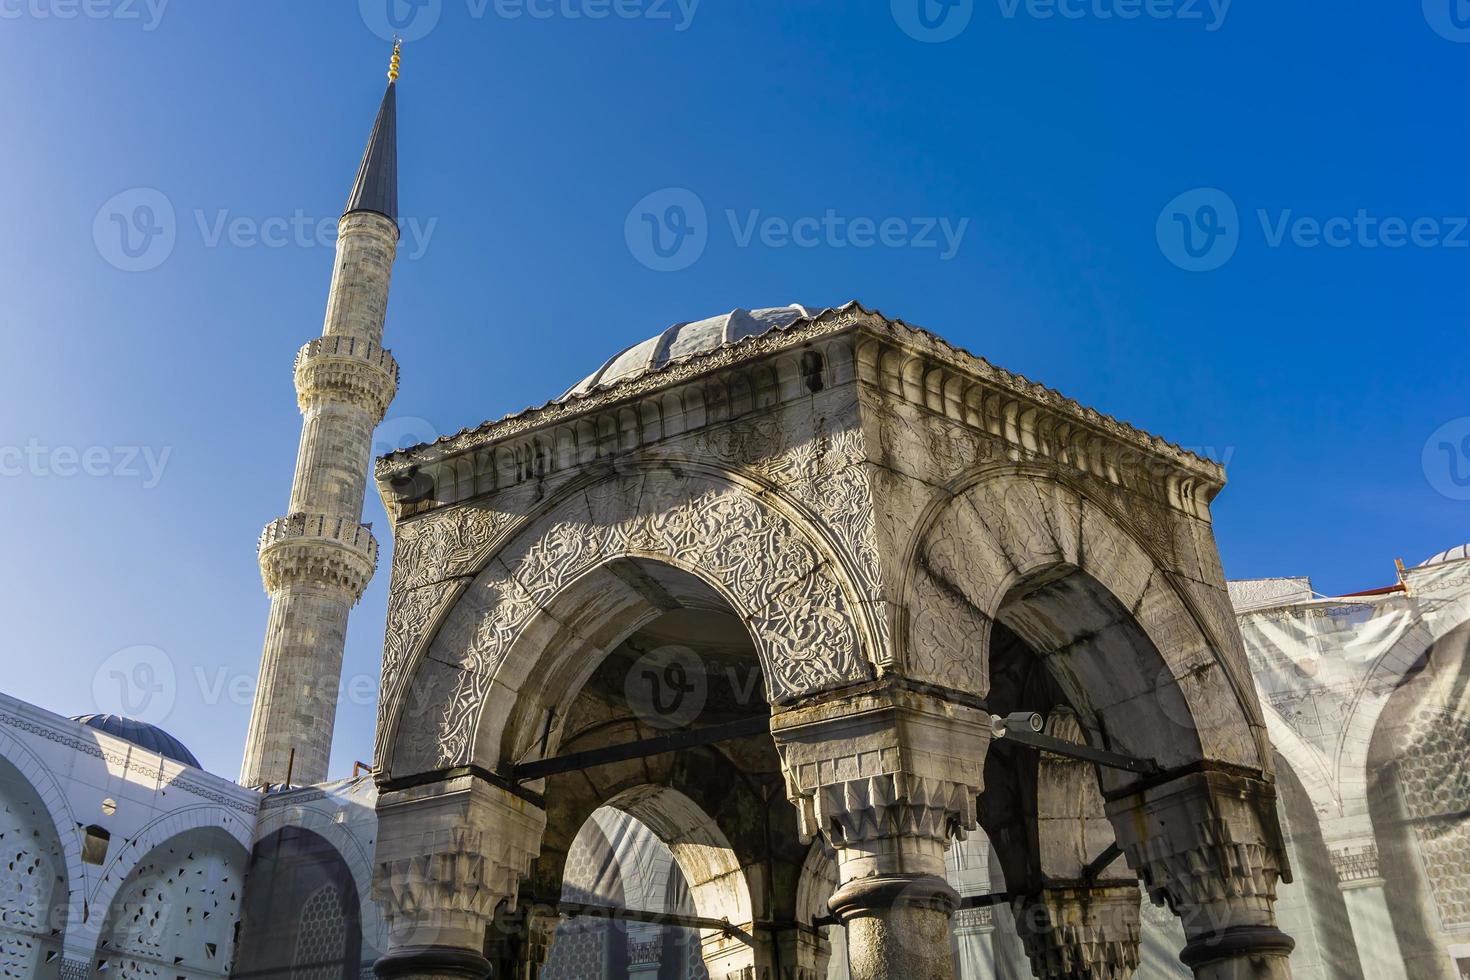 mosquée sultan ahmed mosquée bleue à istanbul turquie photo